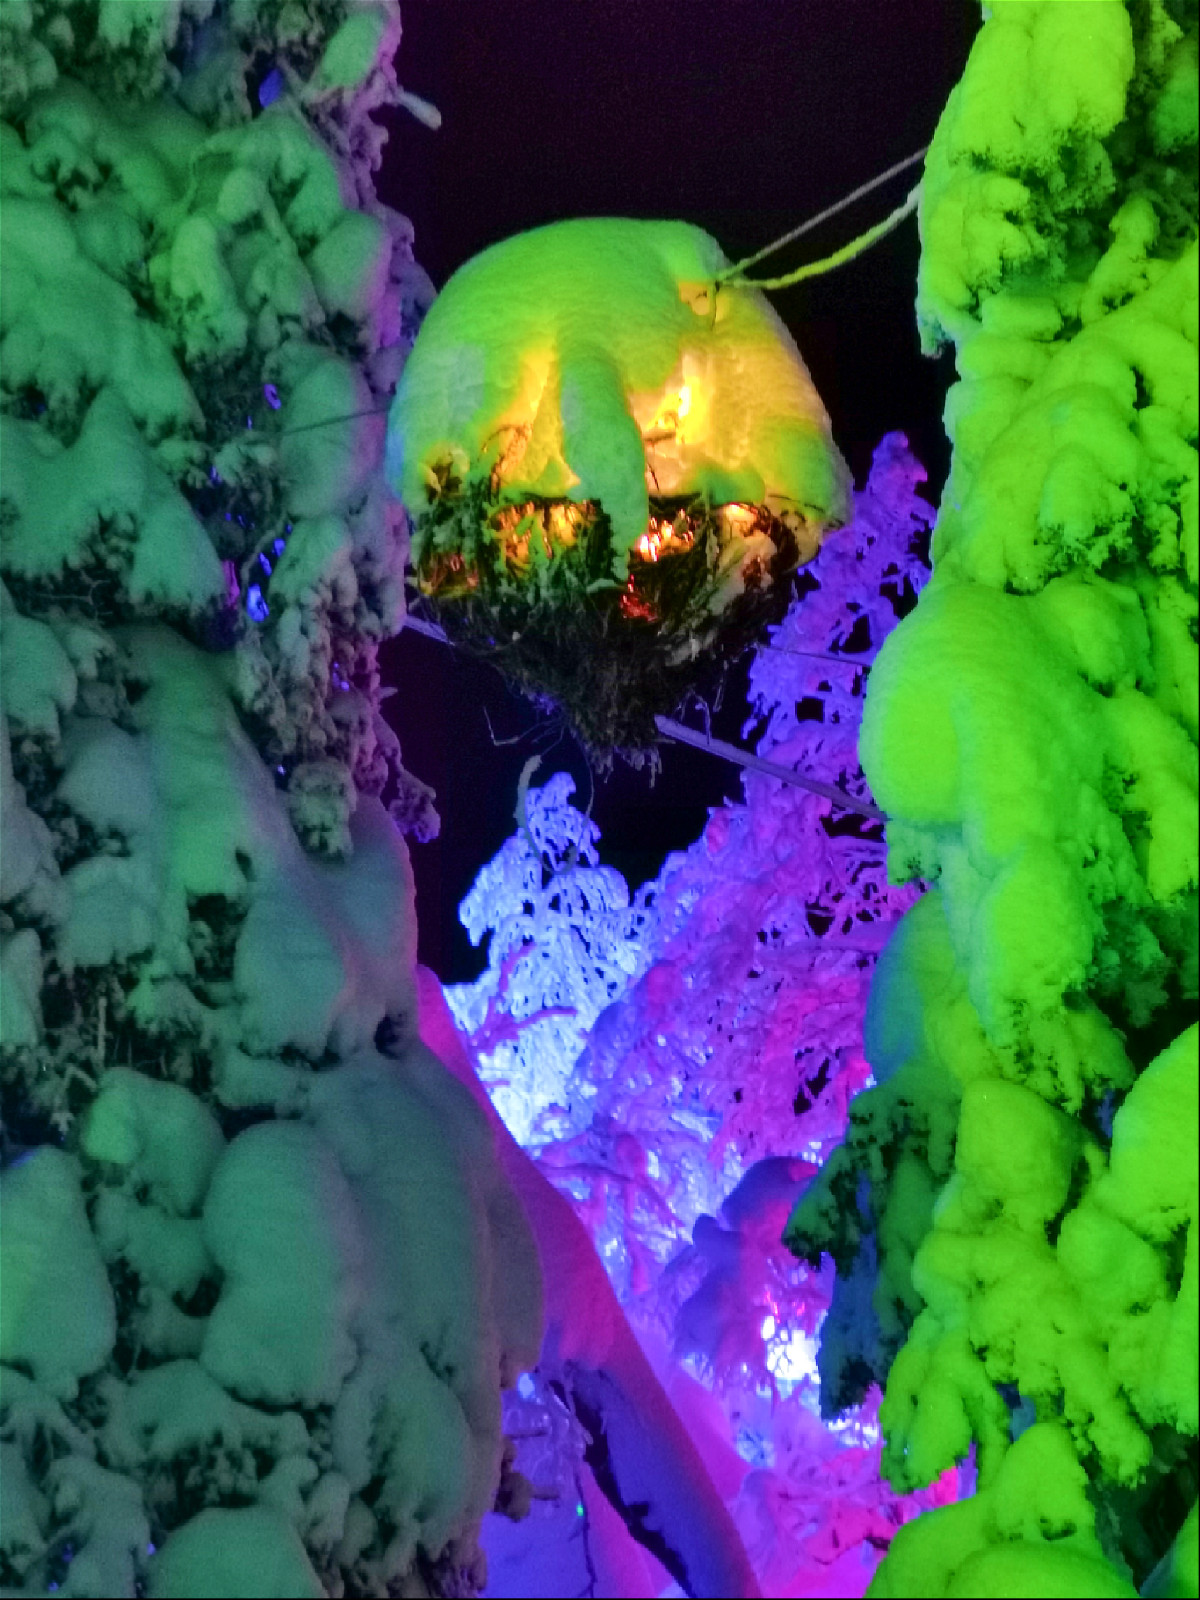 арт обьект с подсветкой висящий между деревьев